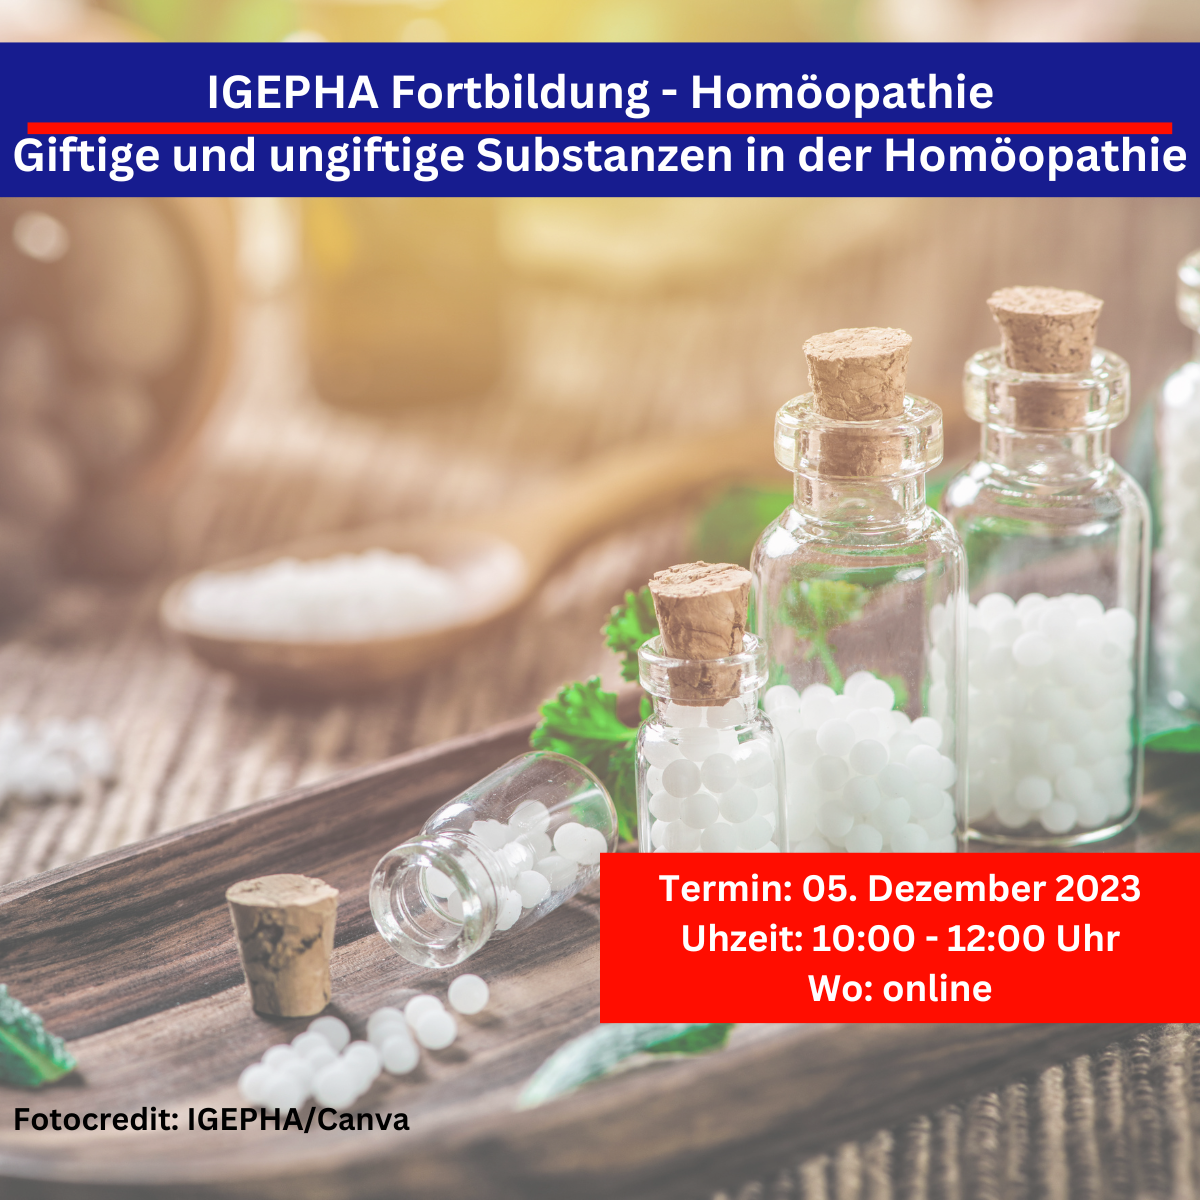 IGEPHA Fortbildung Homöopathie Giftige und ungiftige Substanzen in der Homöopathie